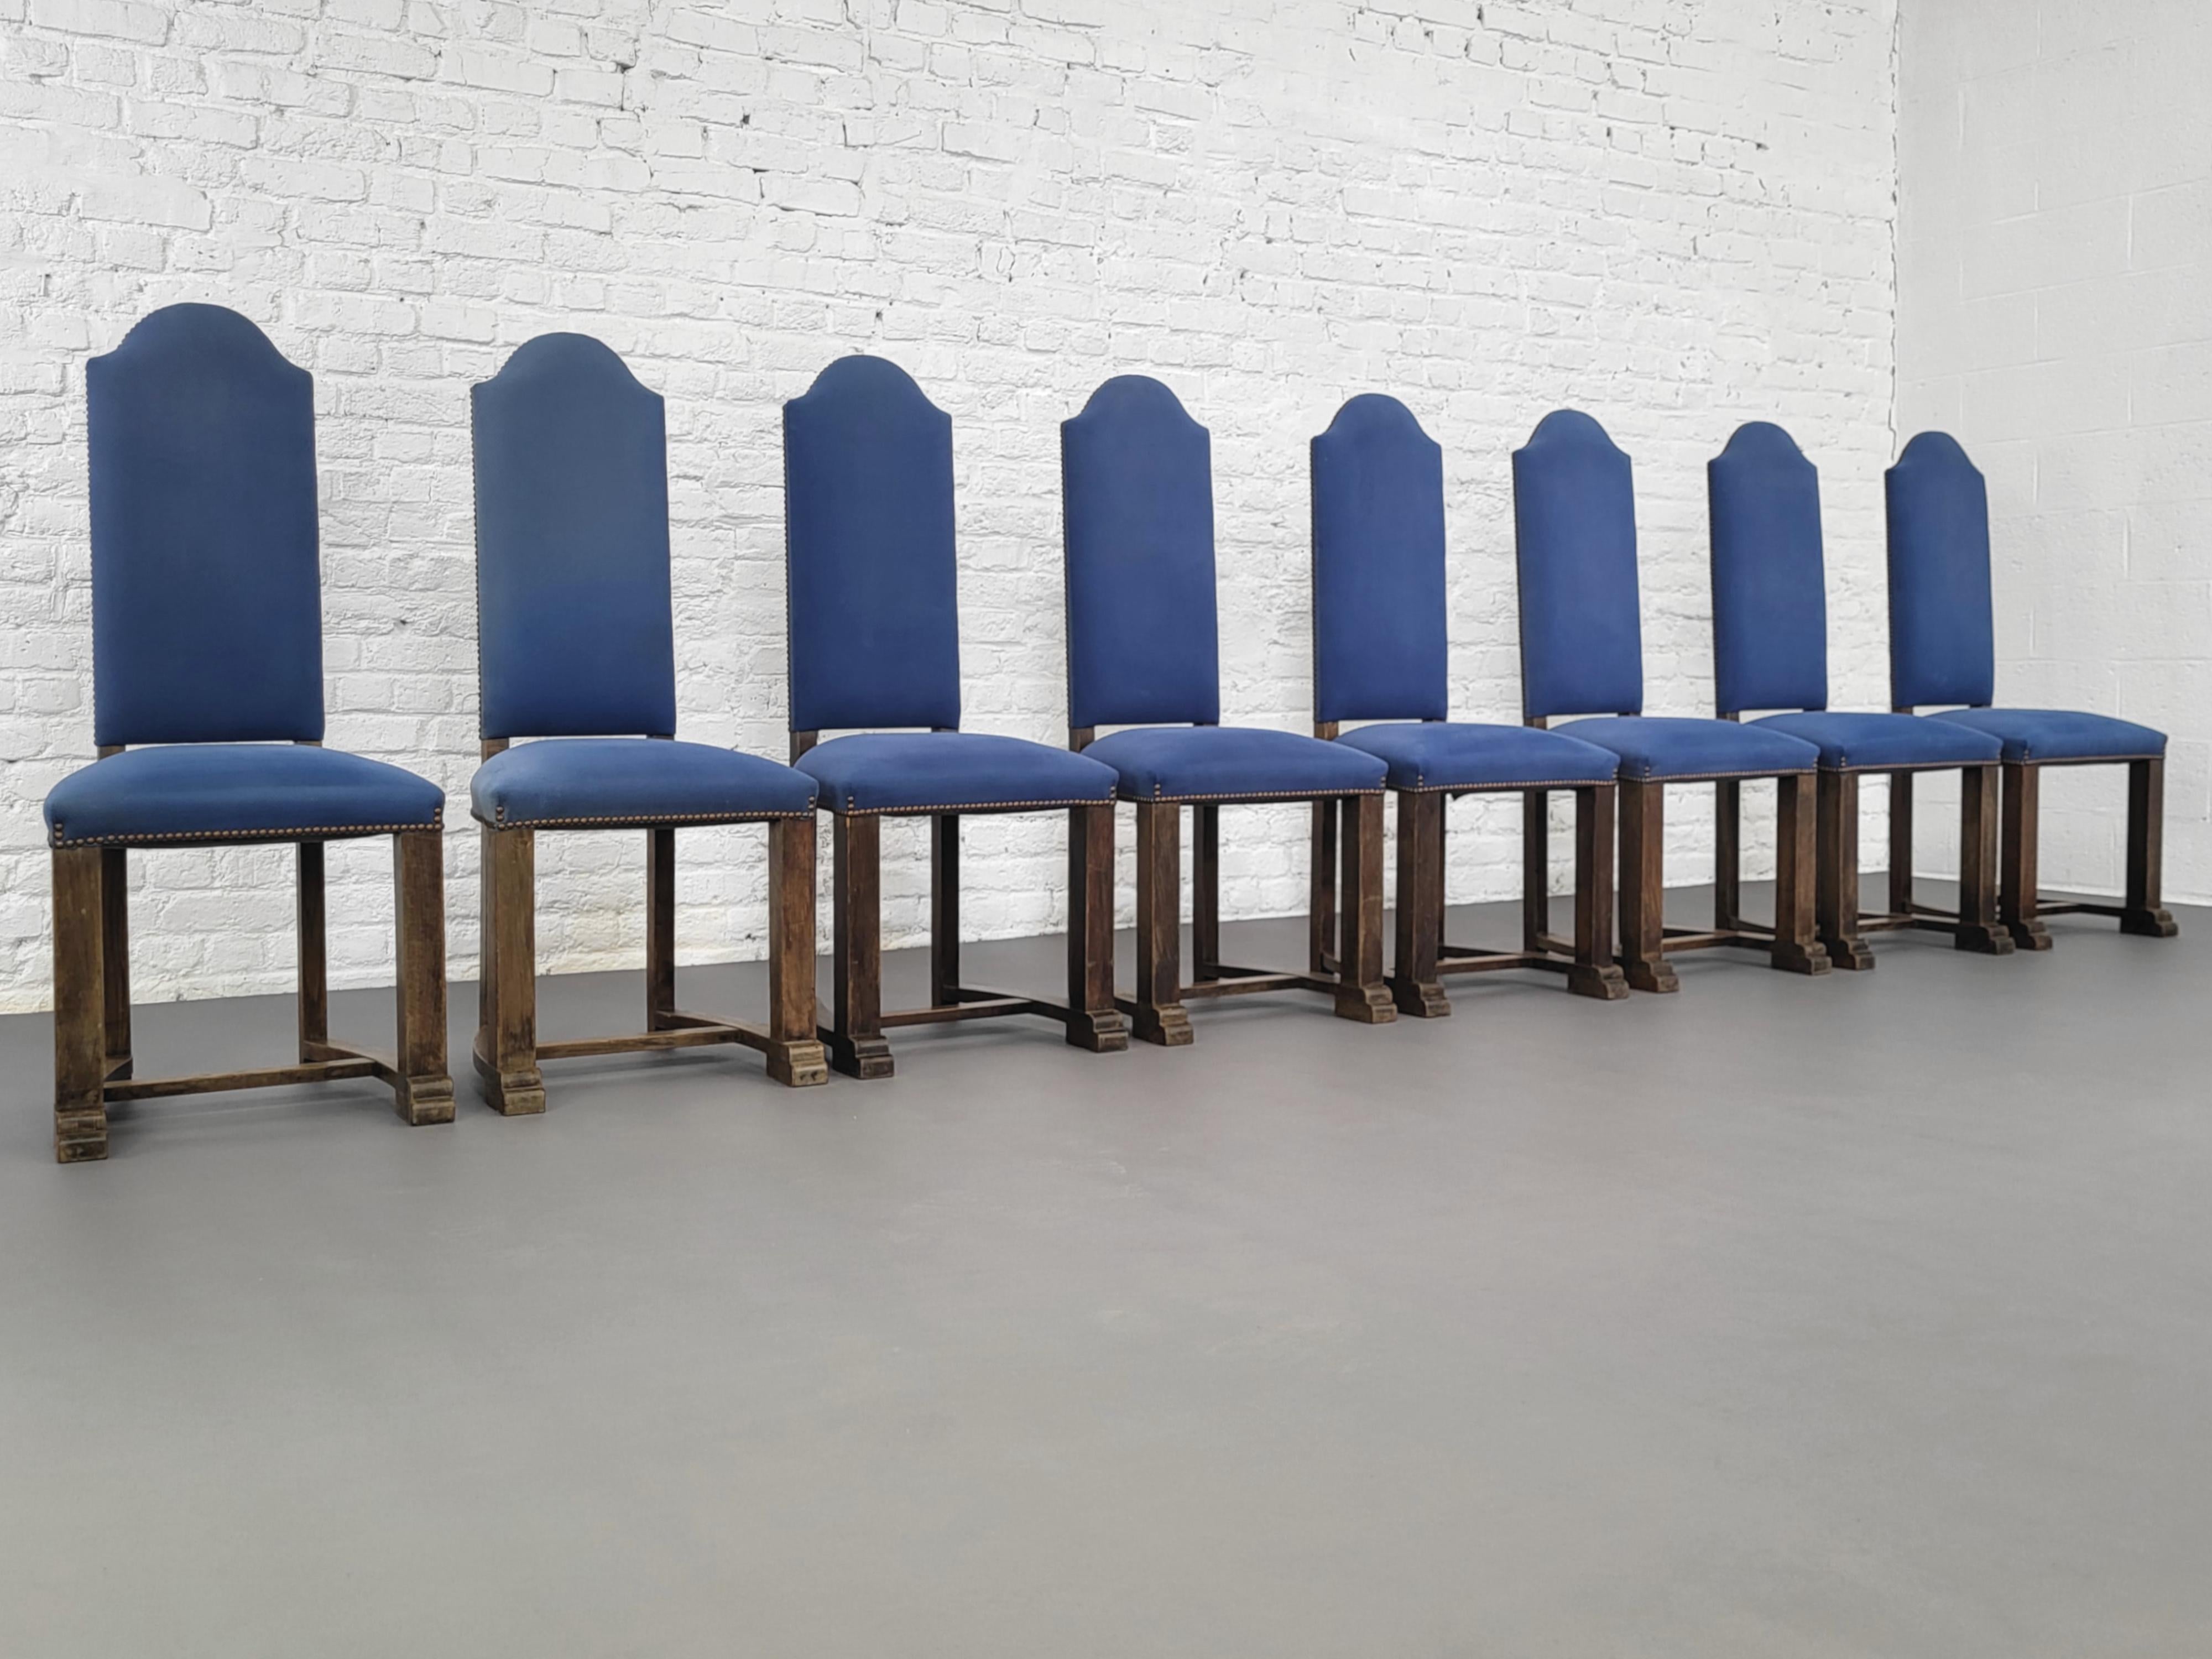 Antiker französischer Louis XIII-Stil mit 8 Stühlen aus Holz und Stoff, bestehend aus einer geschwungenen und geschnitzten Holzstruktur mit hoher Rückenlehne, die mit blauem Stoff überzogen ist.